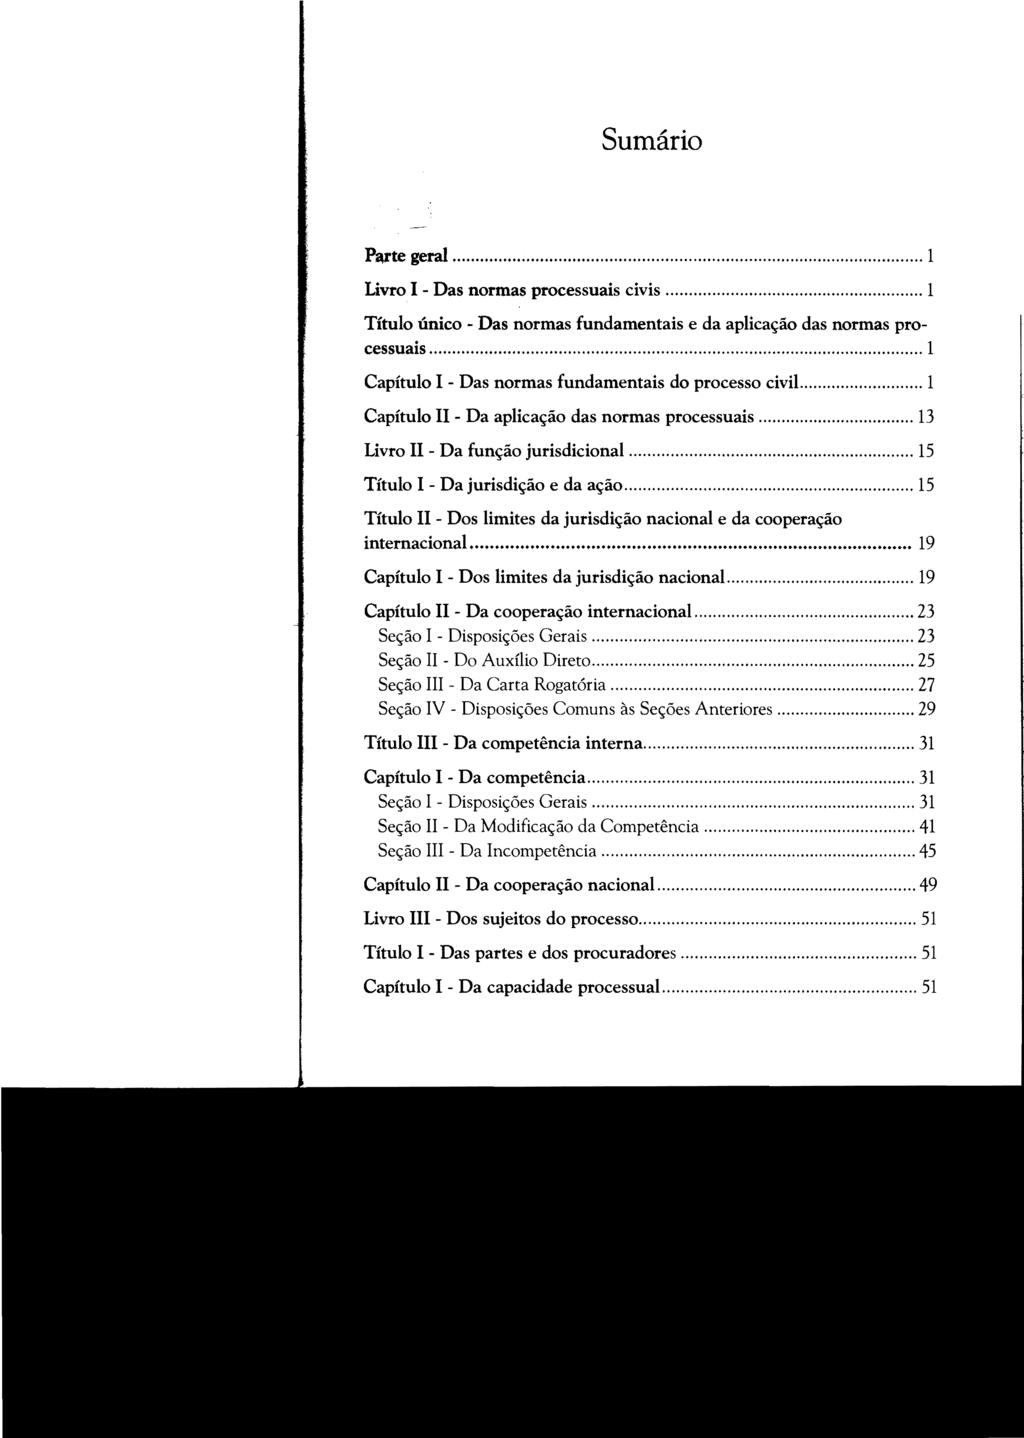 Sumário Parte geral... 1 Livro I - Das normas processuais civis... 1 Título único - Das normas fundamentais e da aplicação das normas processuais.